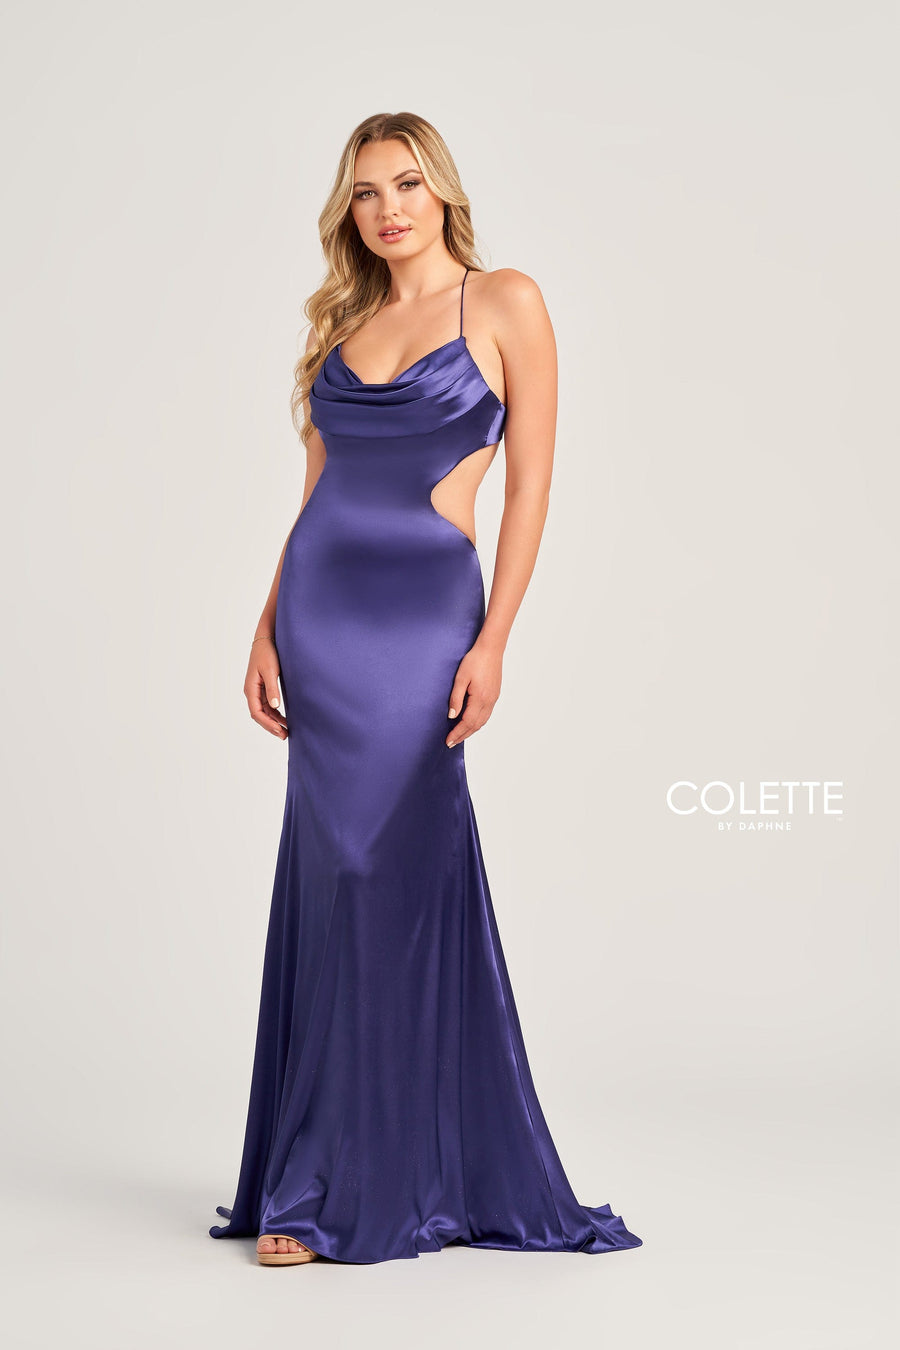 Colette for Mon Cheri Prom Colette: CL5282